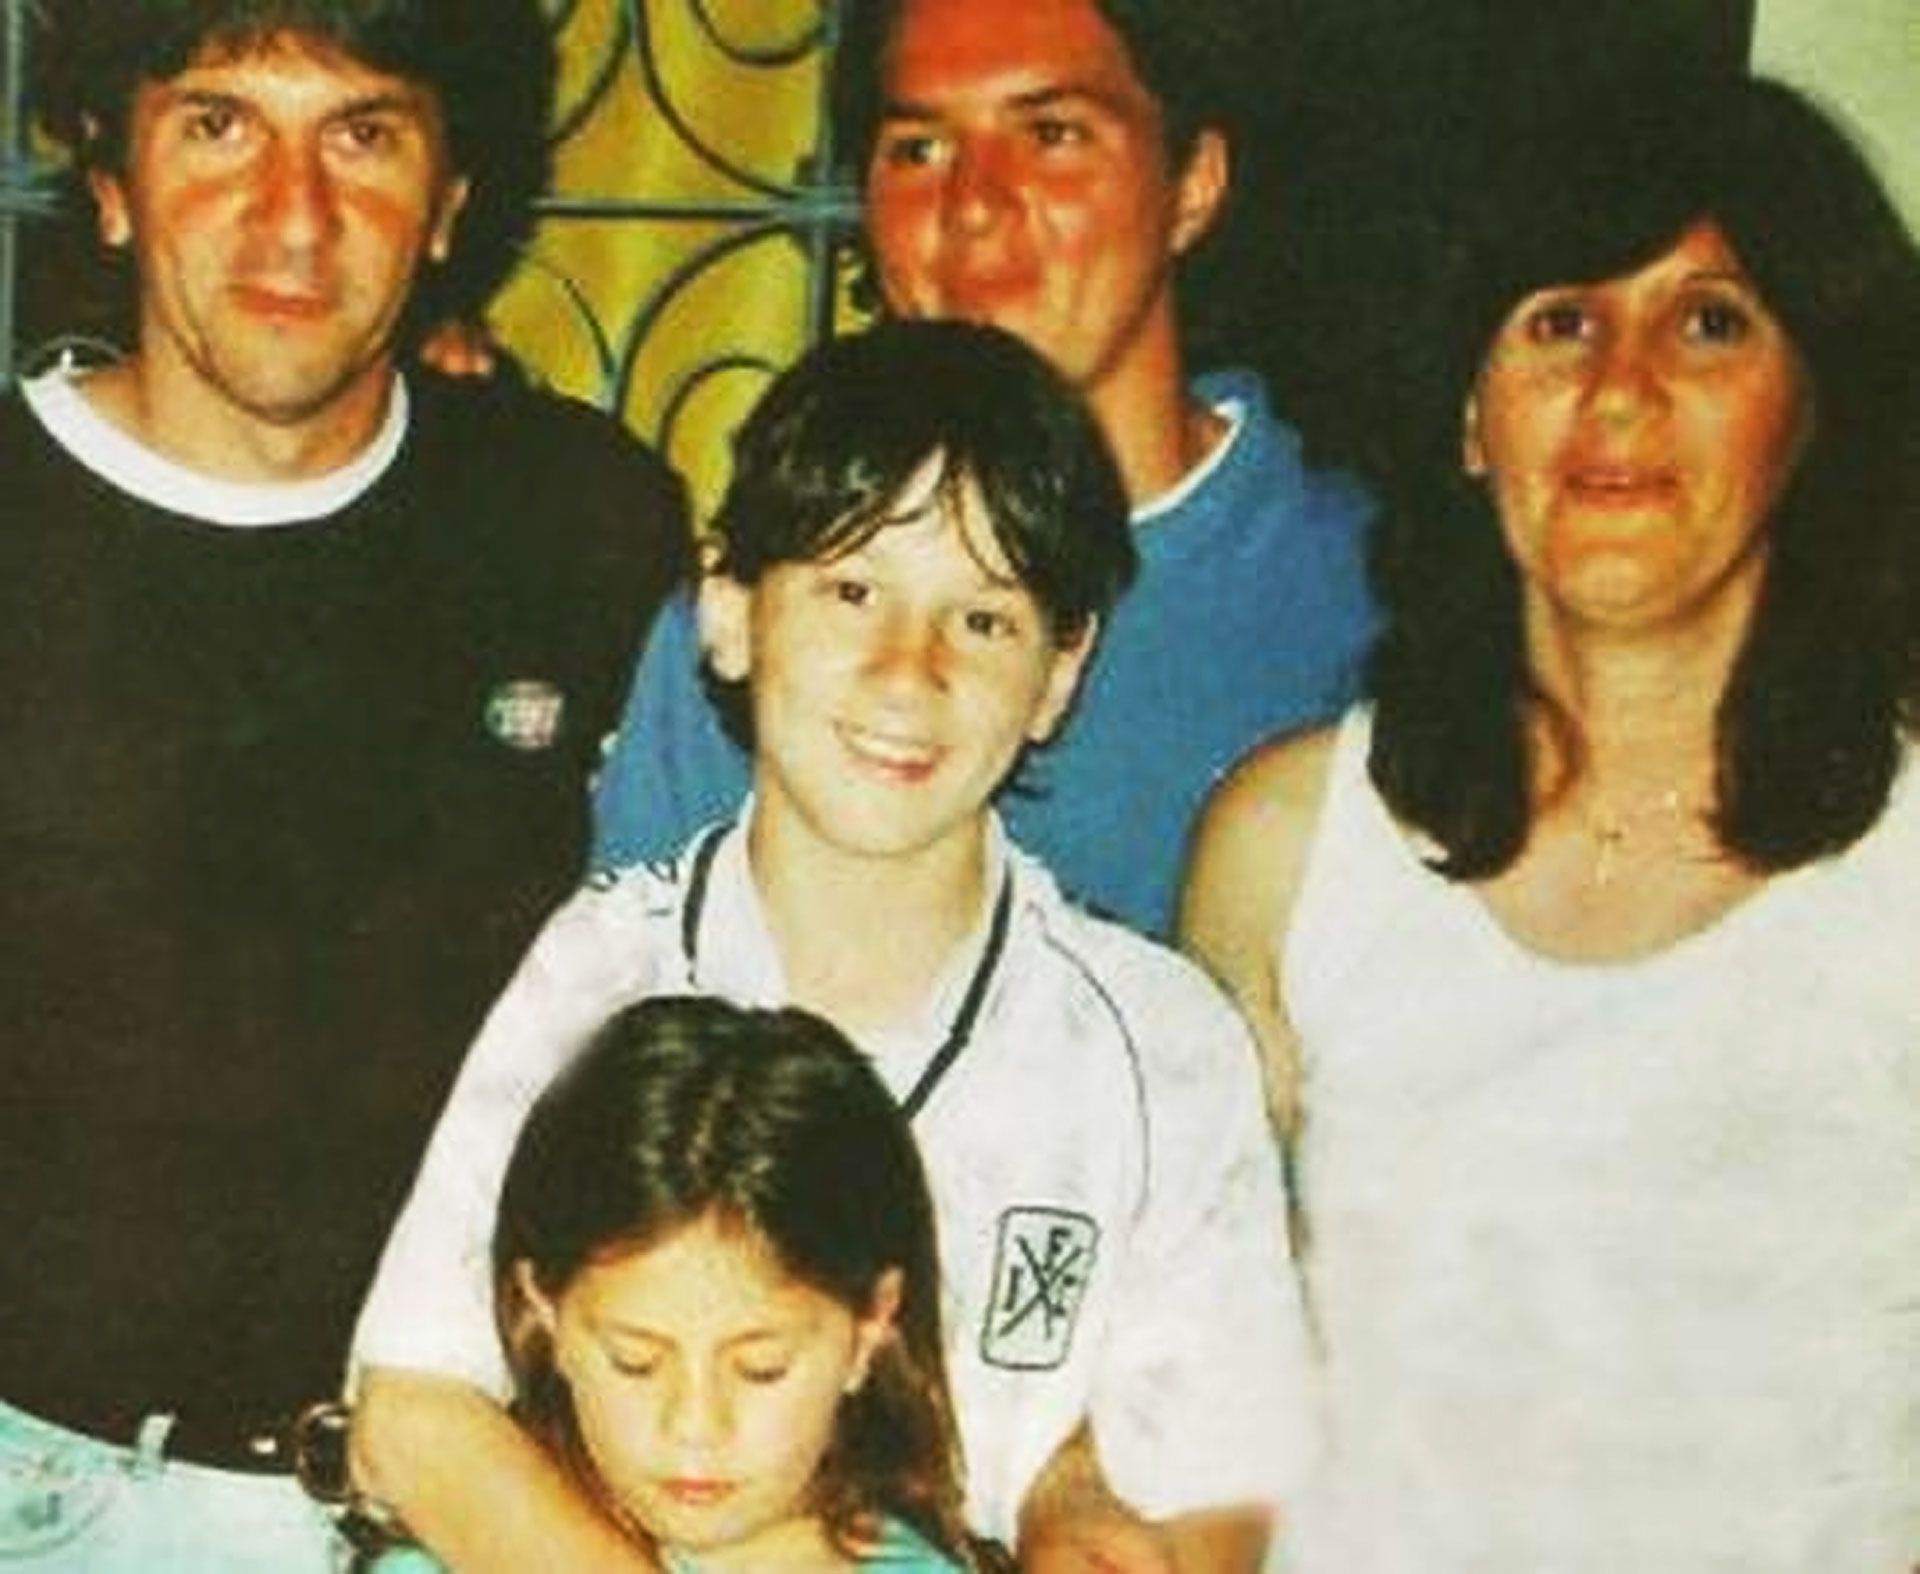 La imagen que generó confusión: Messi con una camiseta alternativa de Independiente en una foto familiar